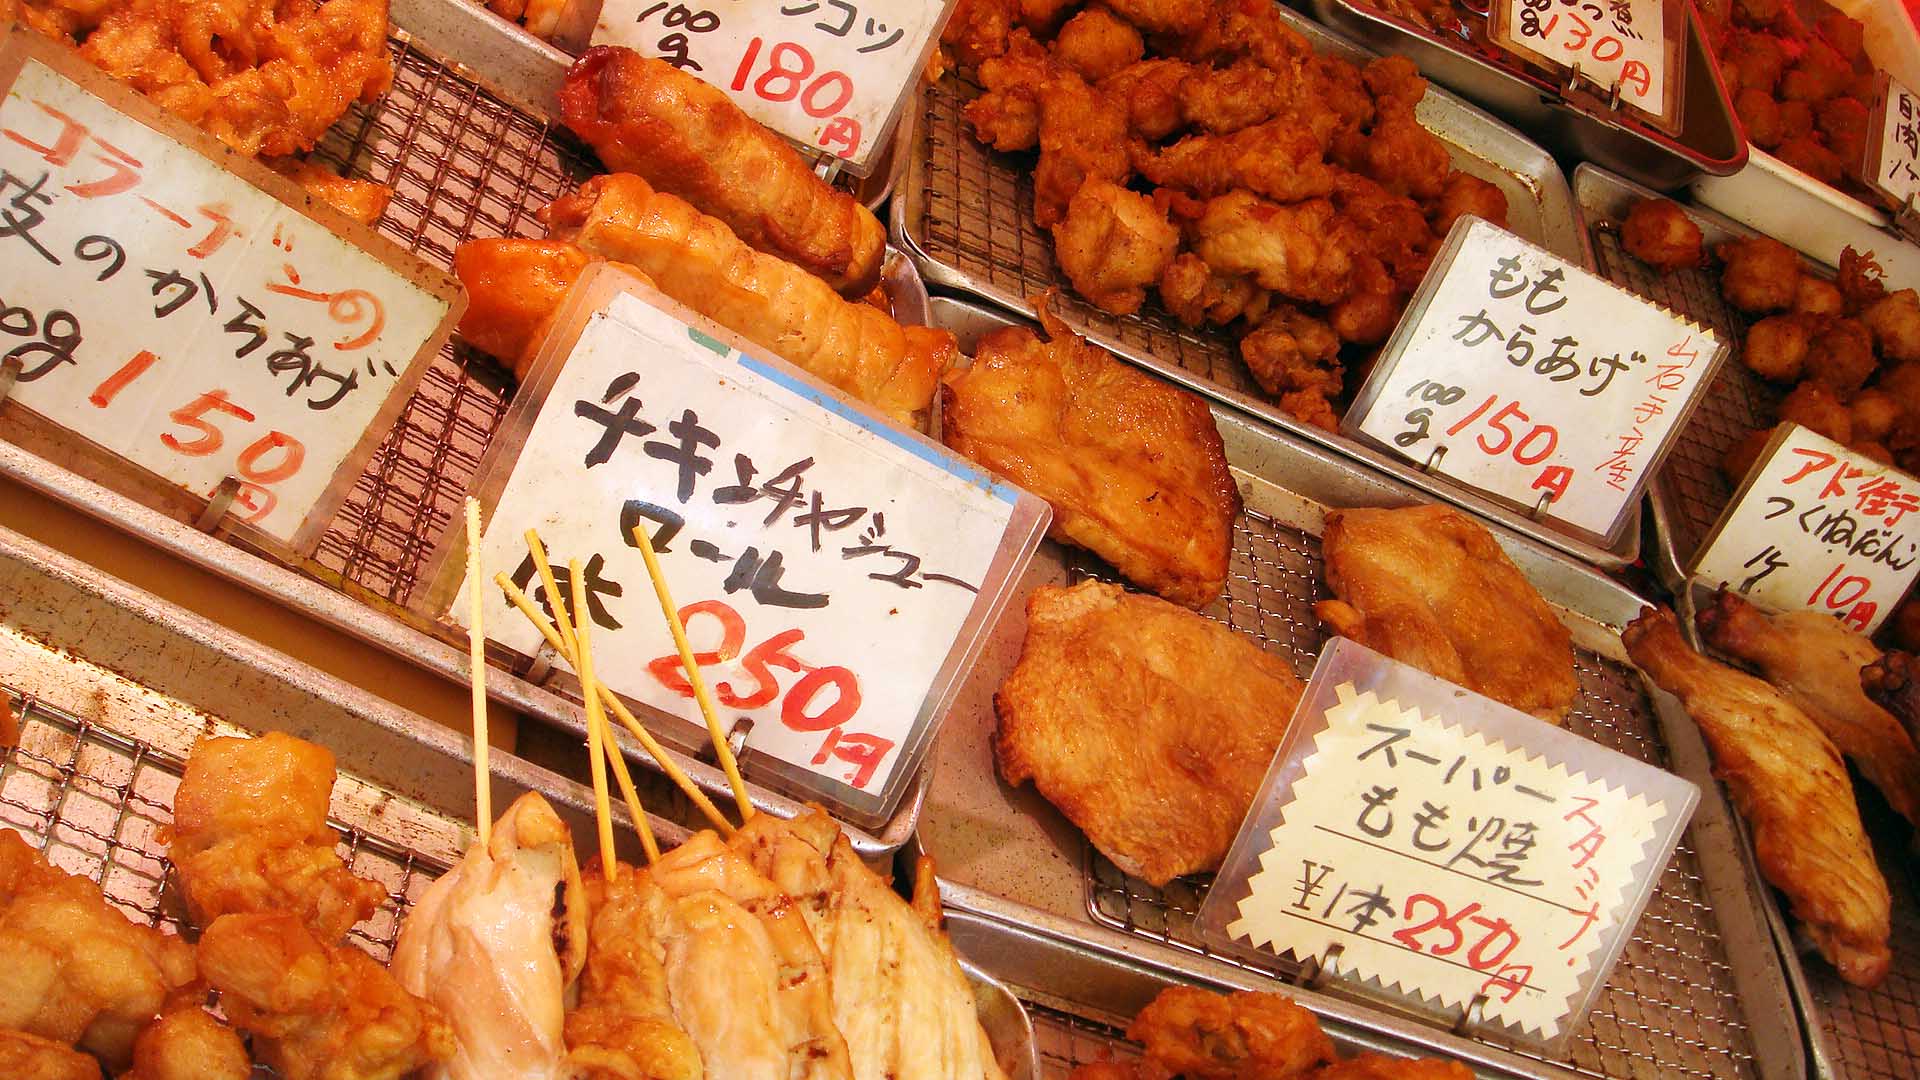 青森県産の地鶏を使った1個10円の「肉だんご」はプリプリの歯ごたえがうまい